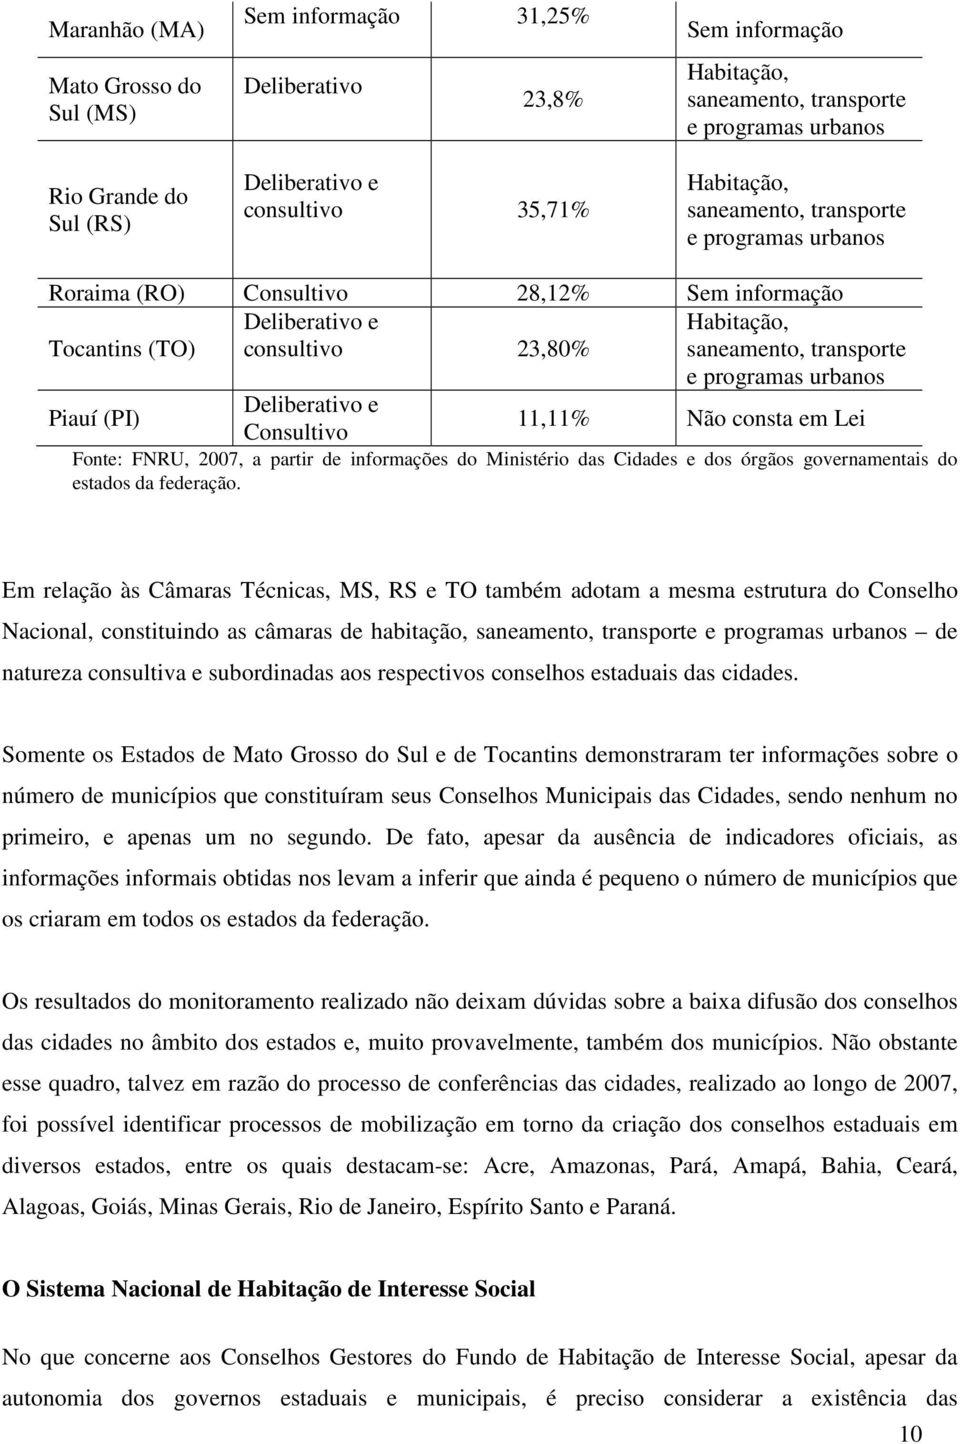 programas urbanos Piauí (PI) Deliberativo e Consultivo 11,11% Não consta em Lei Fonte: FNRU, 2007, a partir de informações do Ministério das Cidades e dos órgãos governamentais do estados da